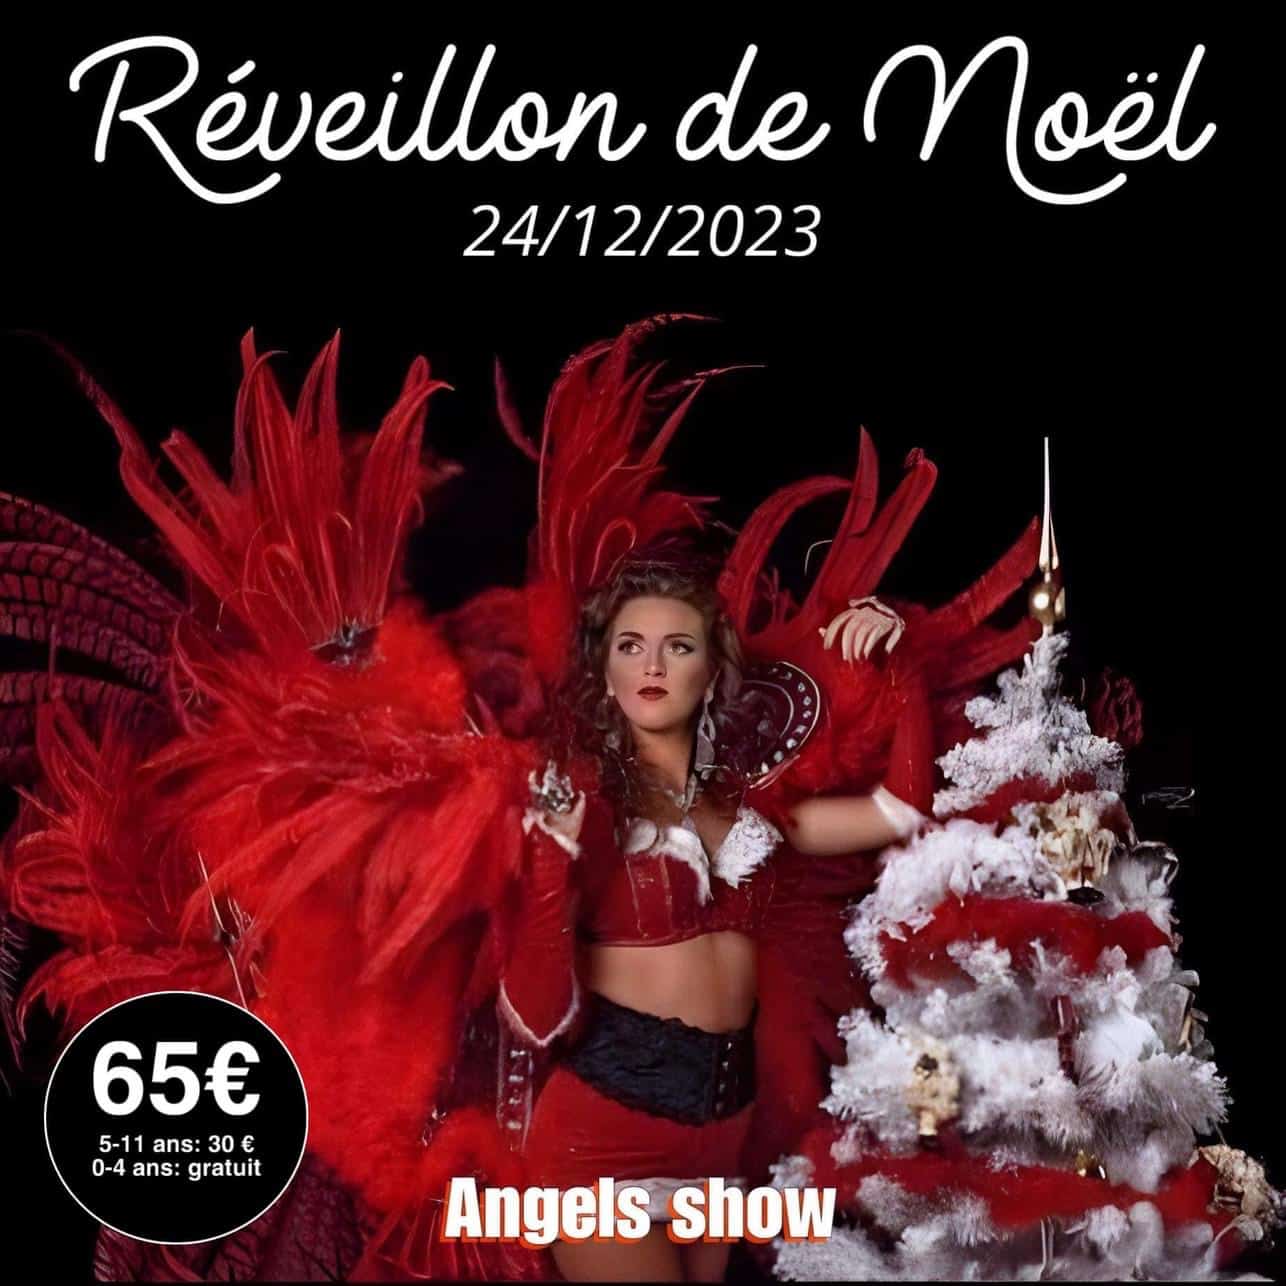 Réveillon de Noël 2023 - Angels Show